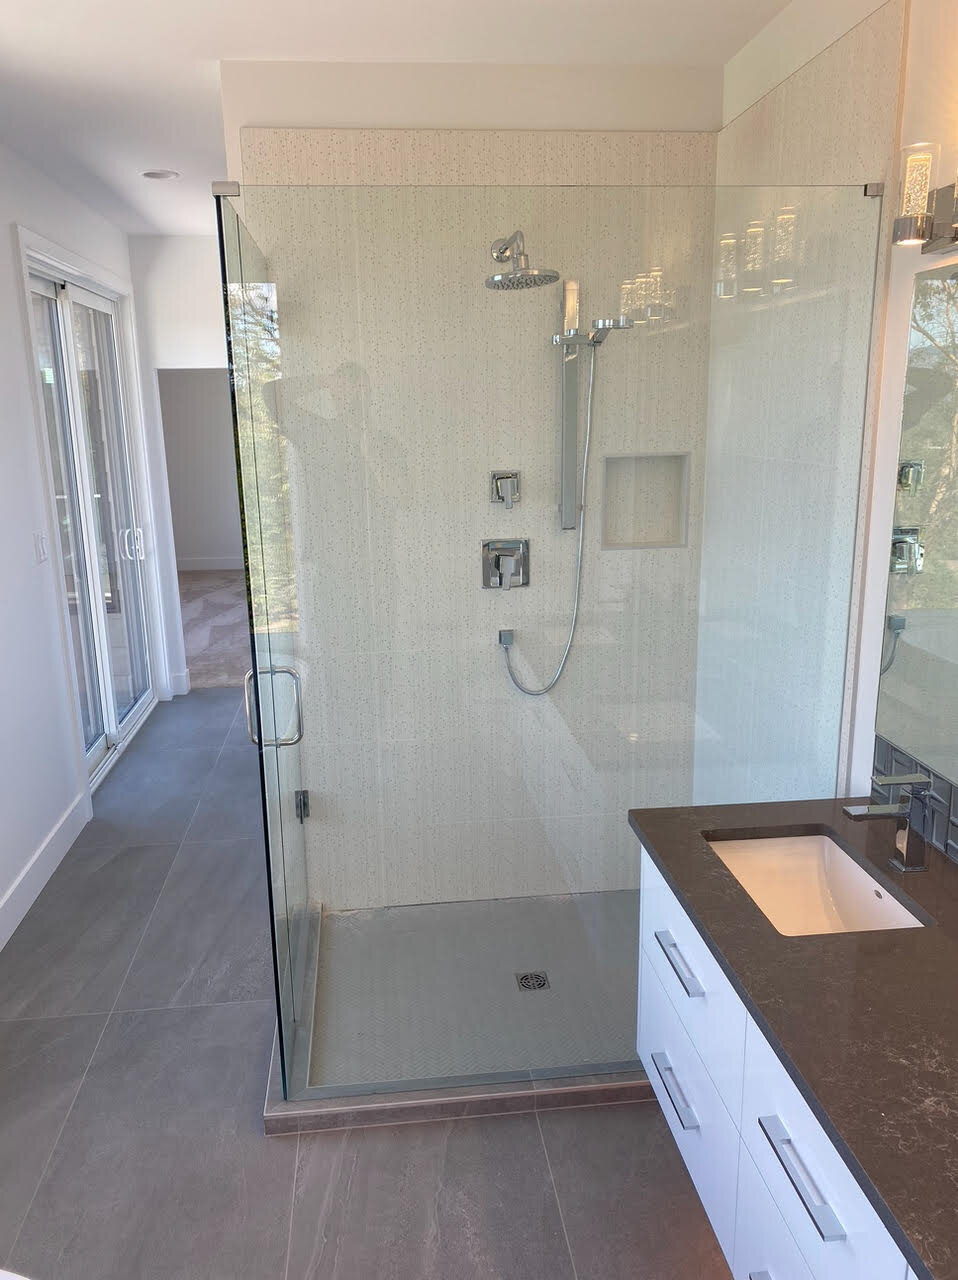 Ensuite design with walk-in shower with glass door.